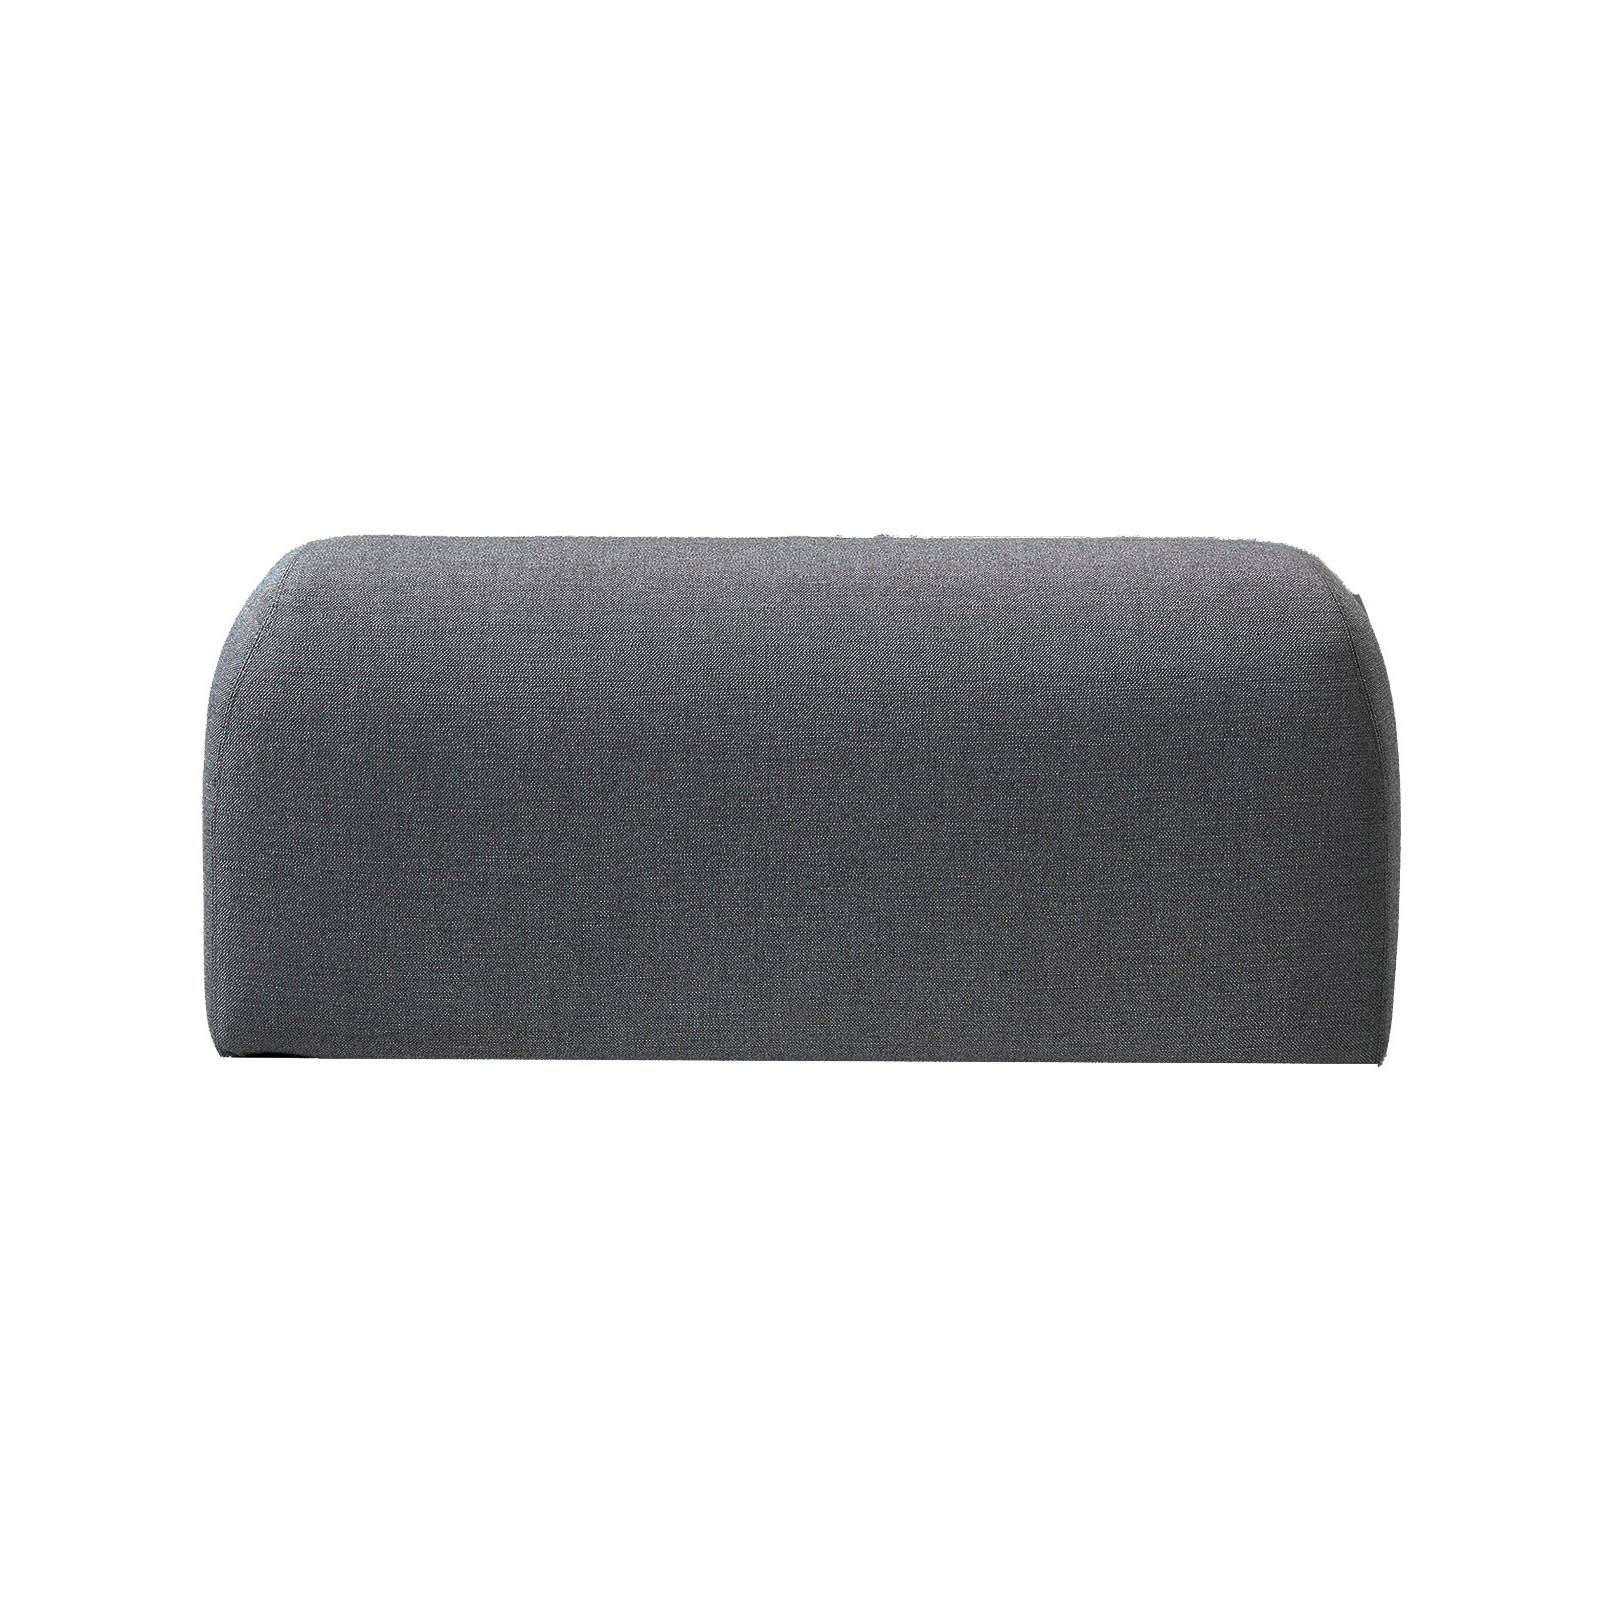 Space Seitenkissen für 2-Sitzer Sofa aus Cane-line AirTouch mit QuickDry in Grey